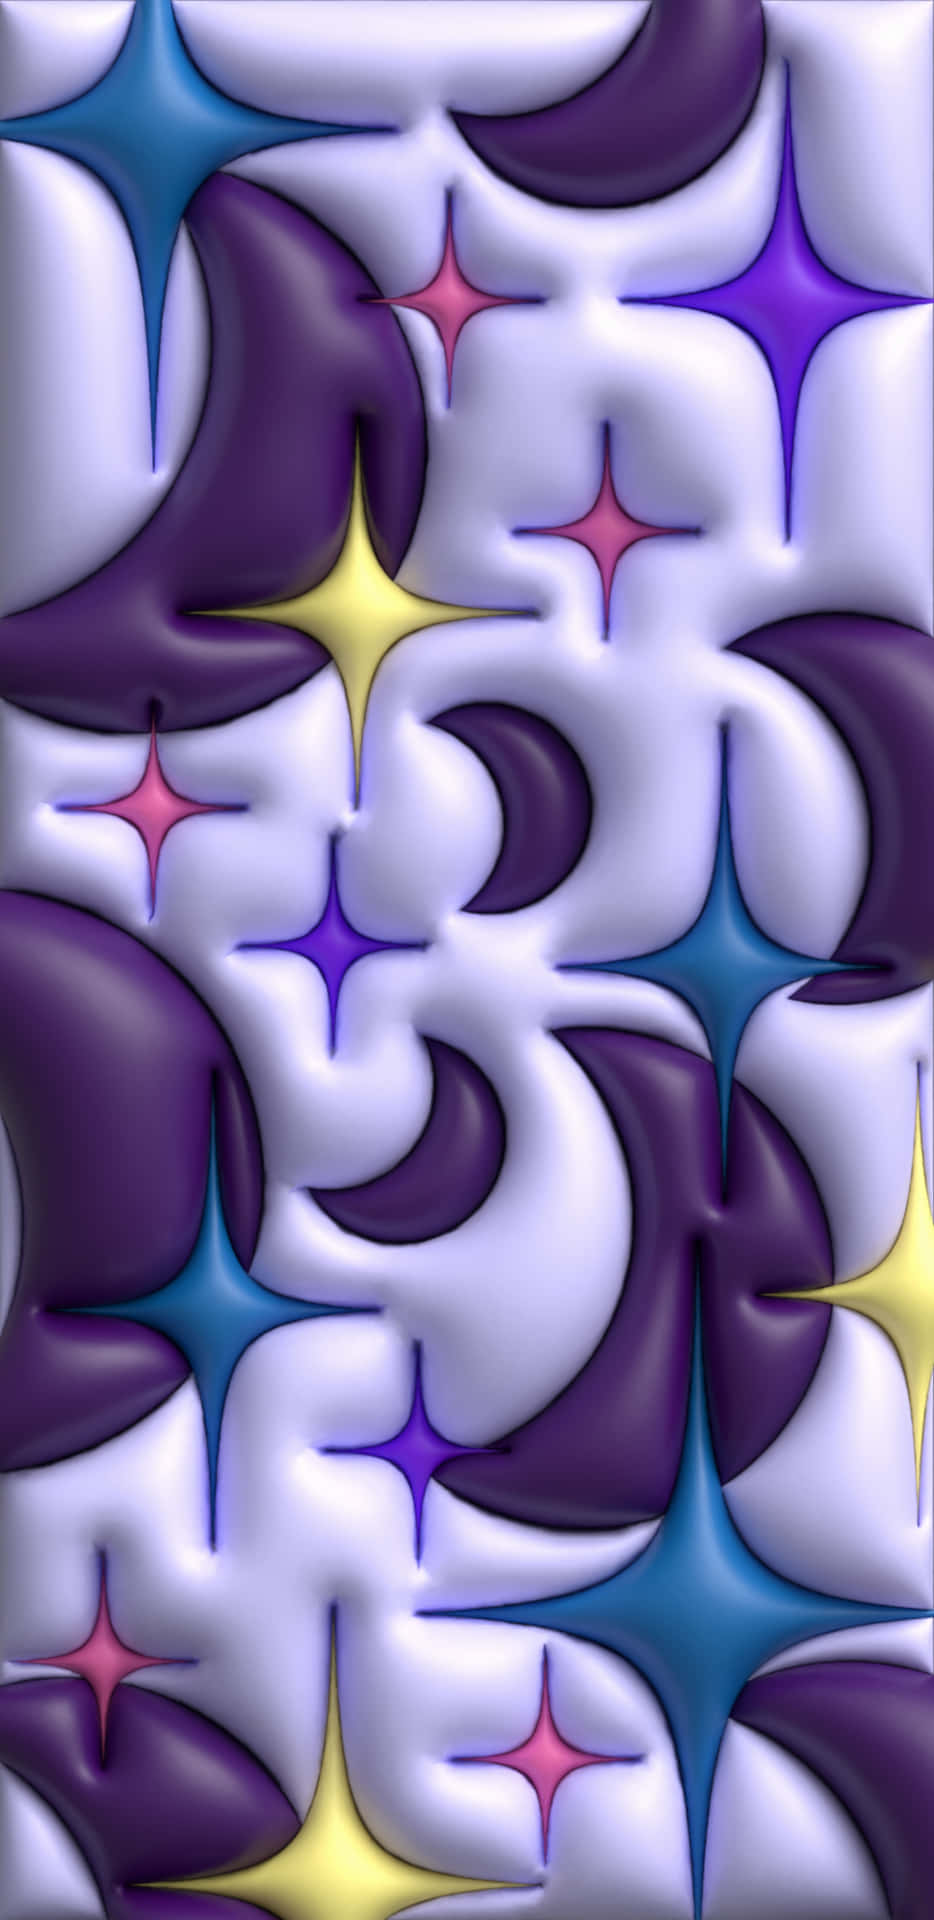 Abstract Puffy Starsand Swirls Pattern Wallpaper